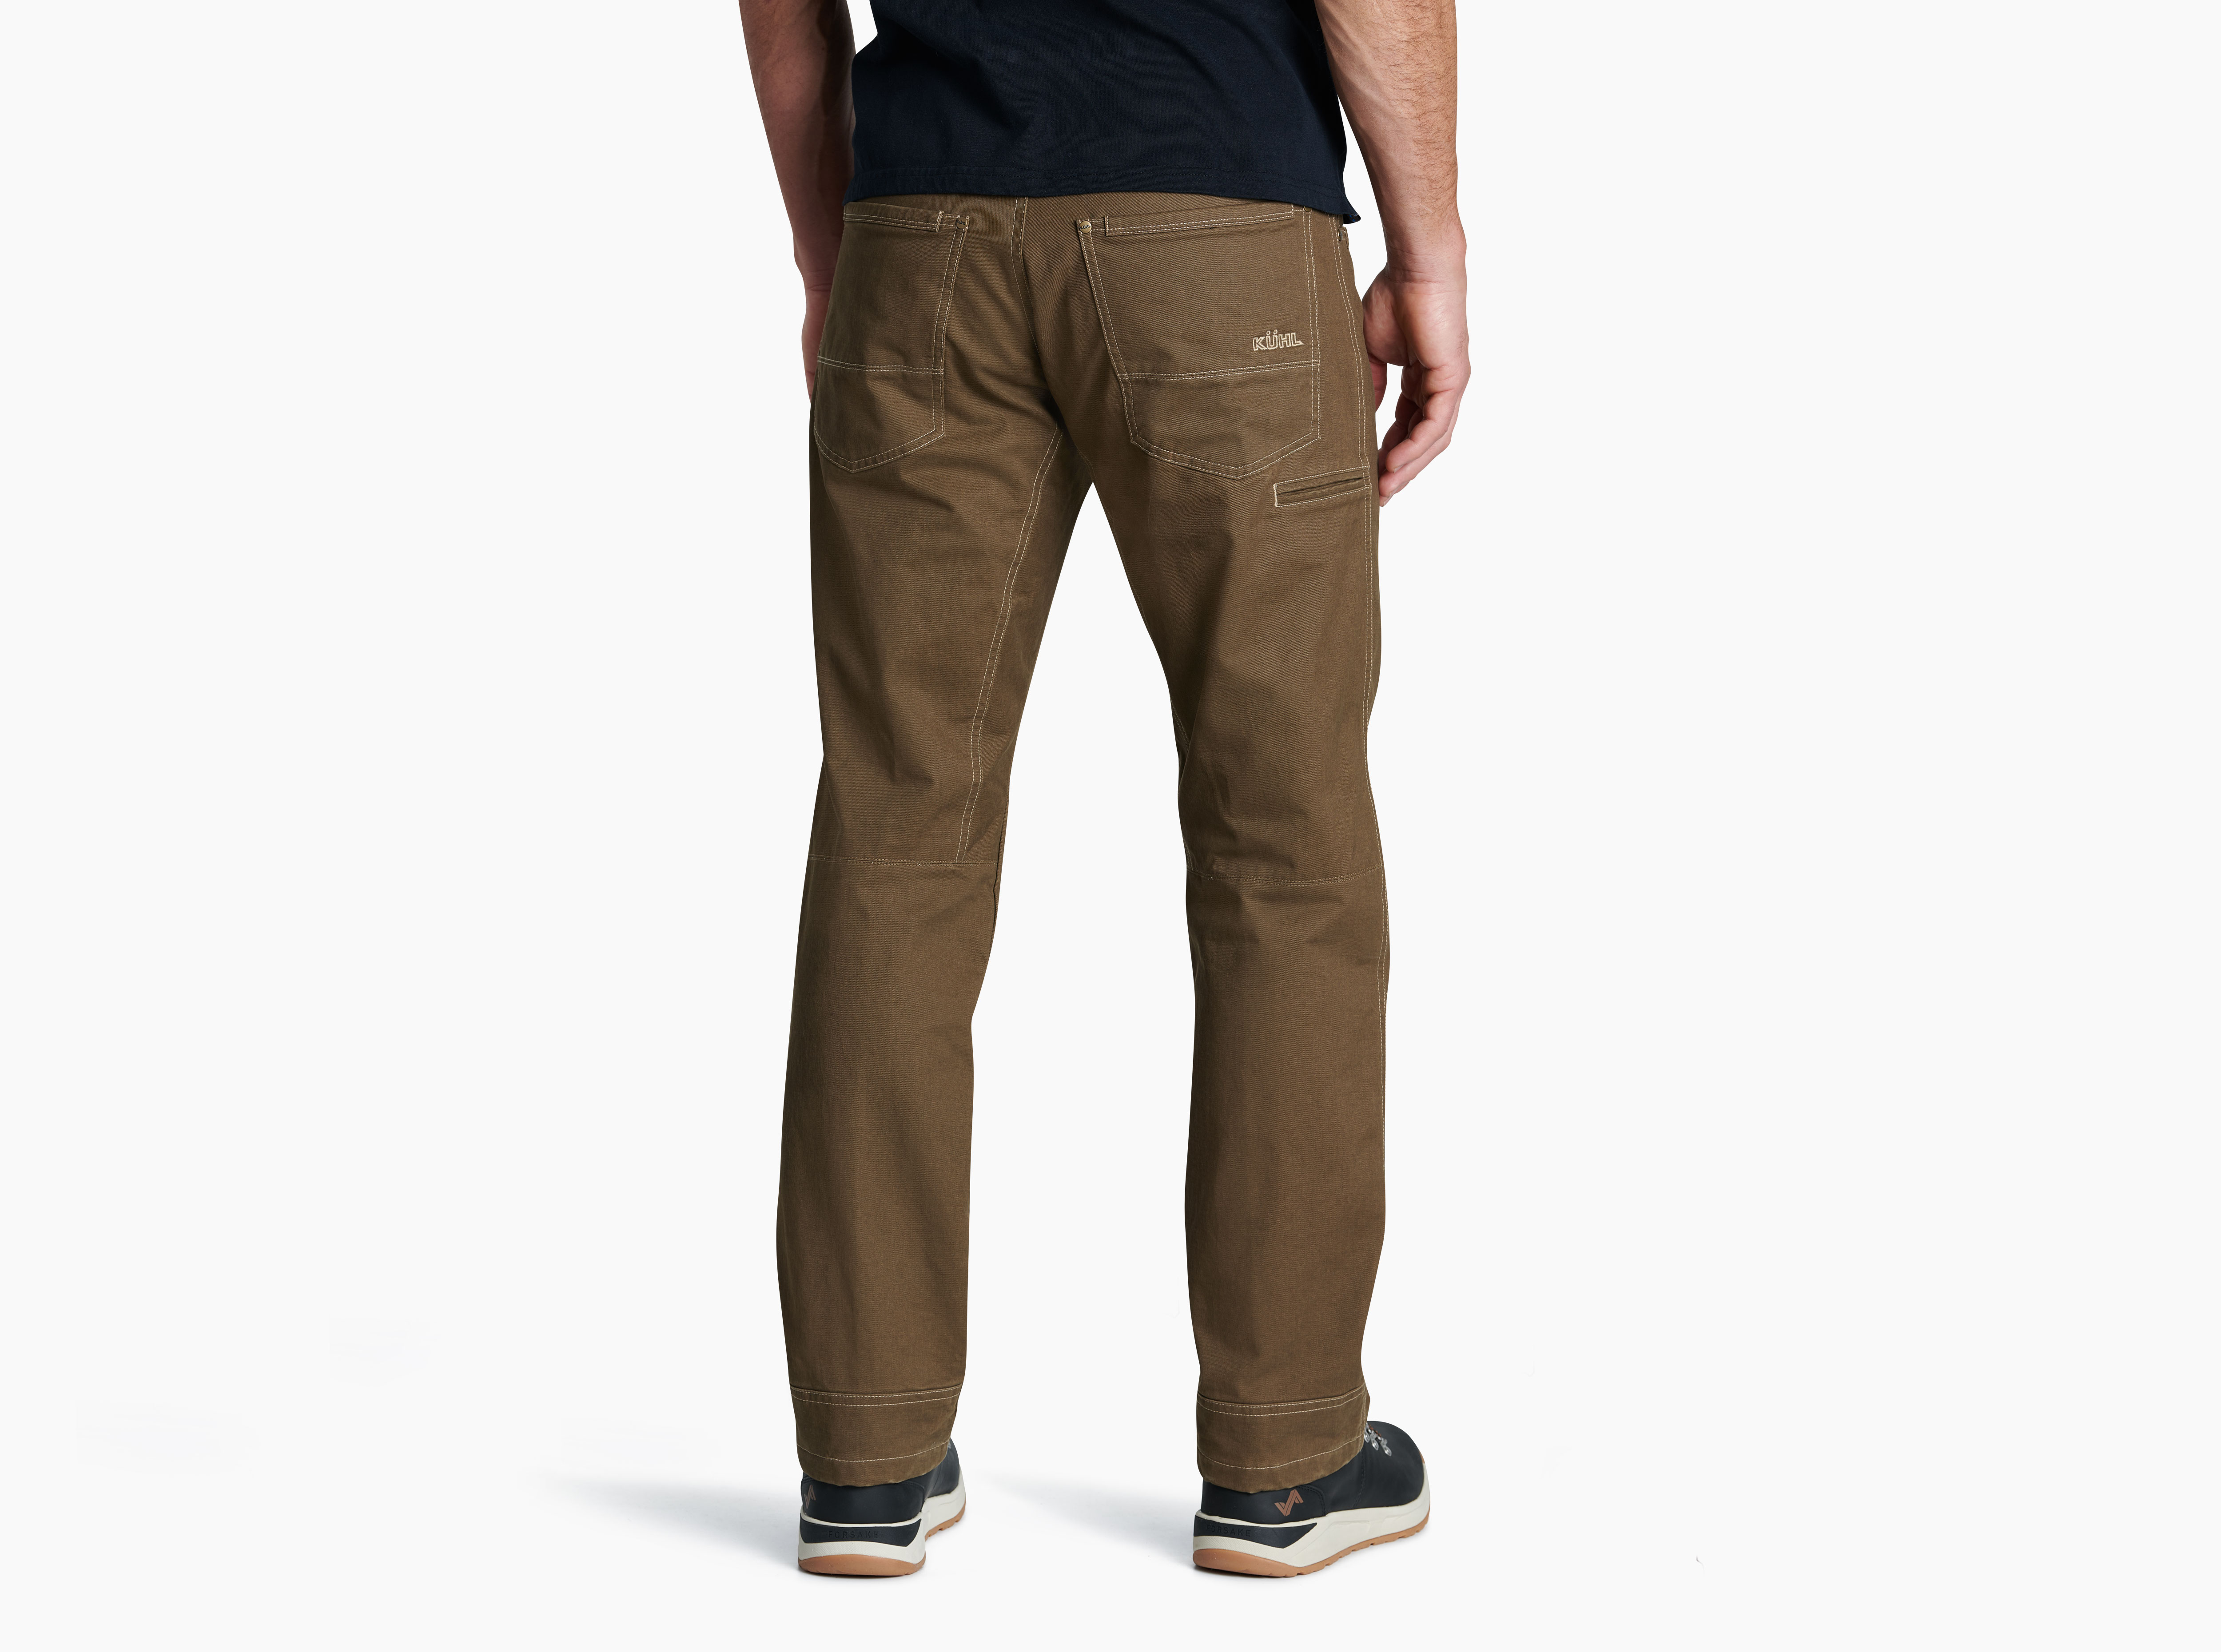 KÜHL Hot Rydr™ Pants For Men